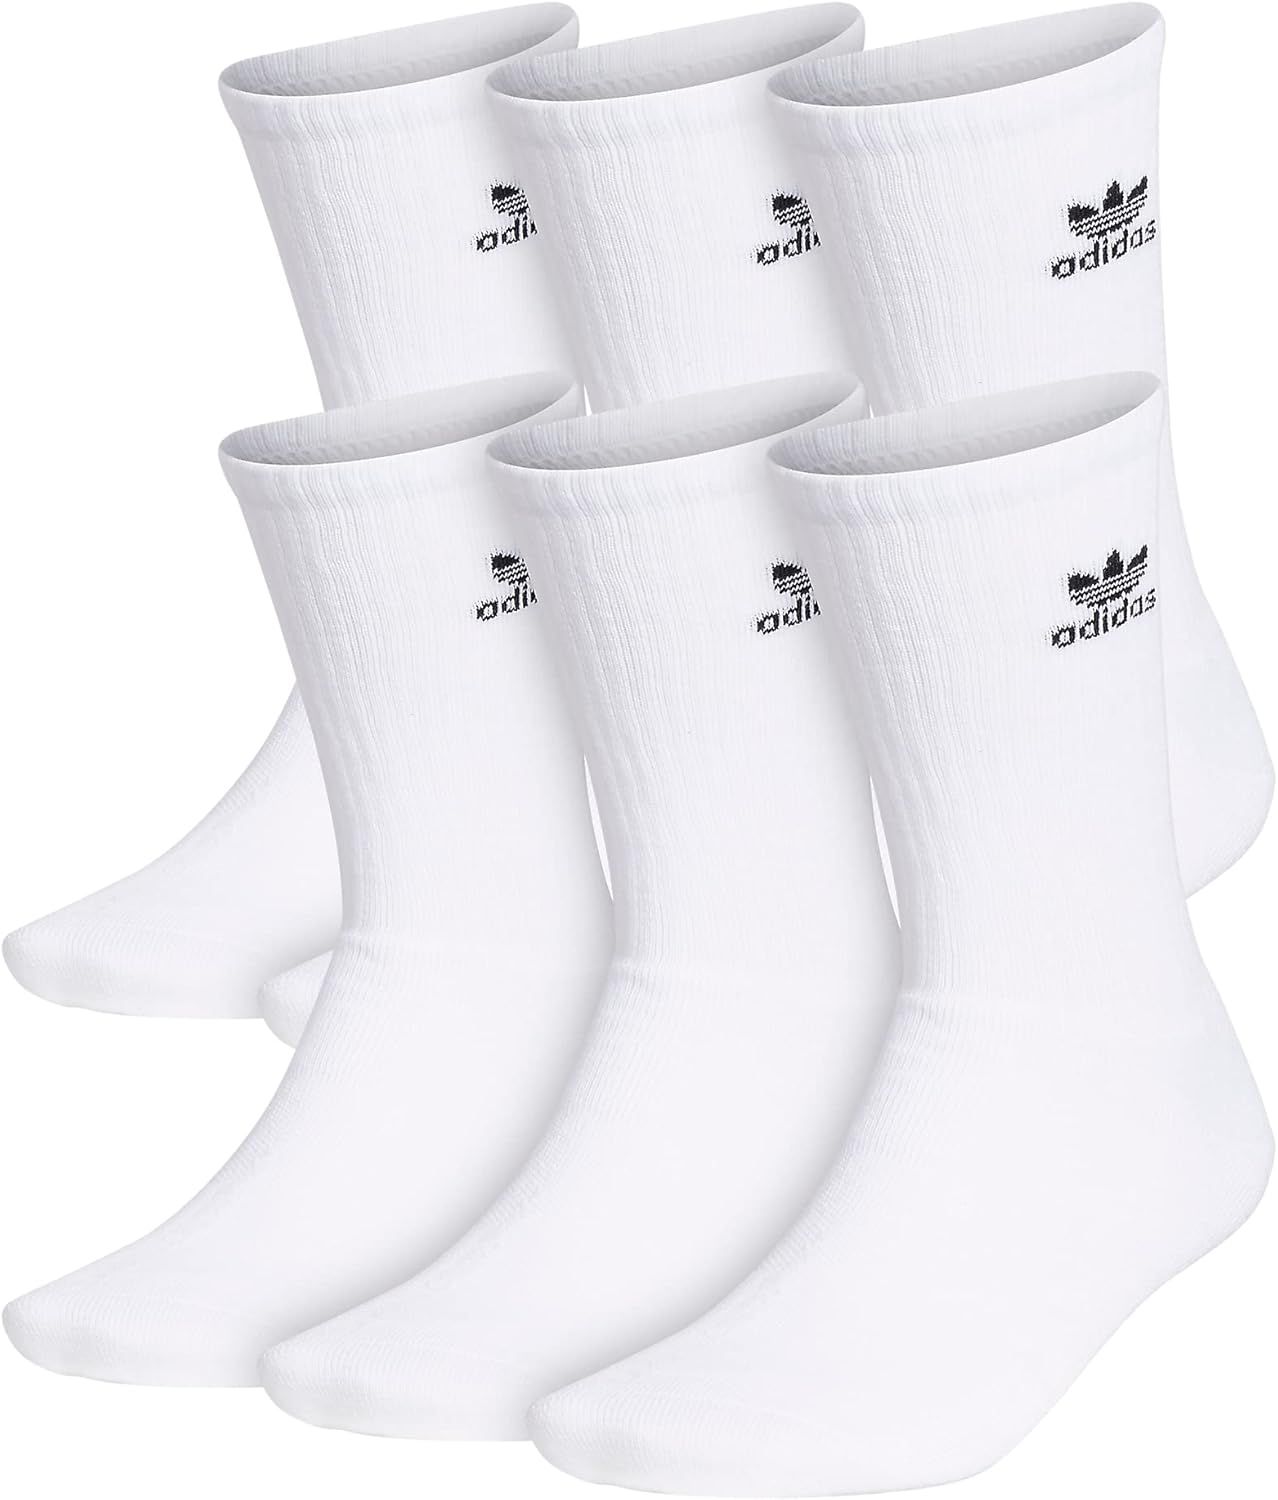 adidas Originals unisex-adult Trefoil Crew Socks (6-pair) at Amazon Men’s Clothing store | Amazon (US)